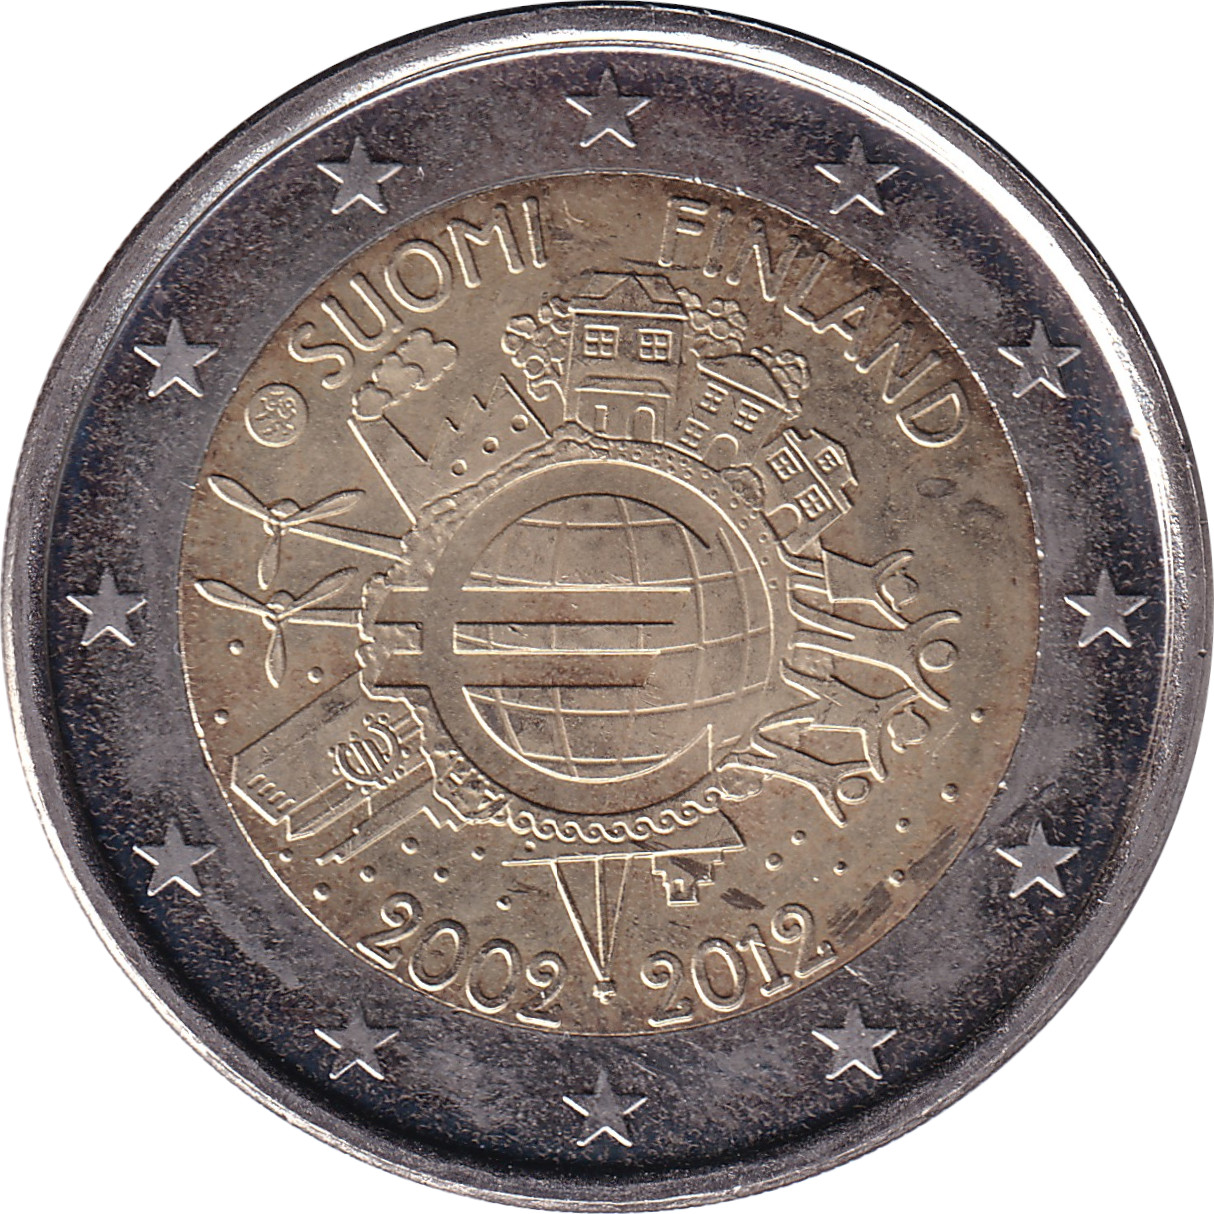 2 euro - Mise en circulation de l'Euro - Finlande